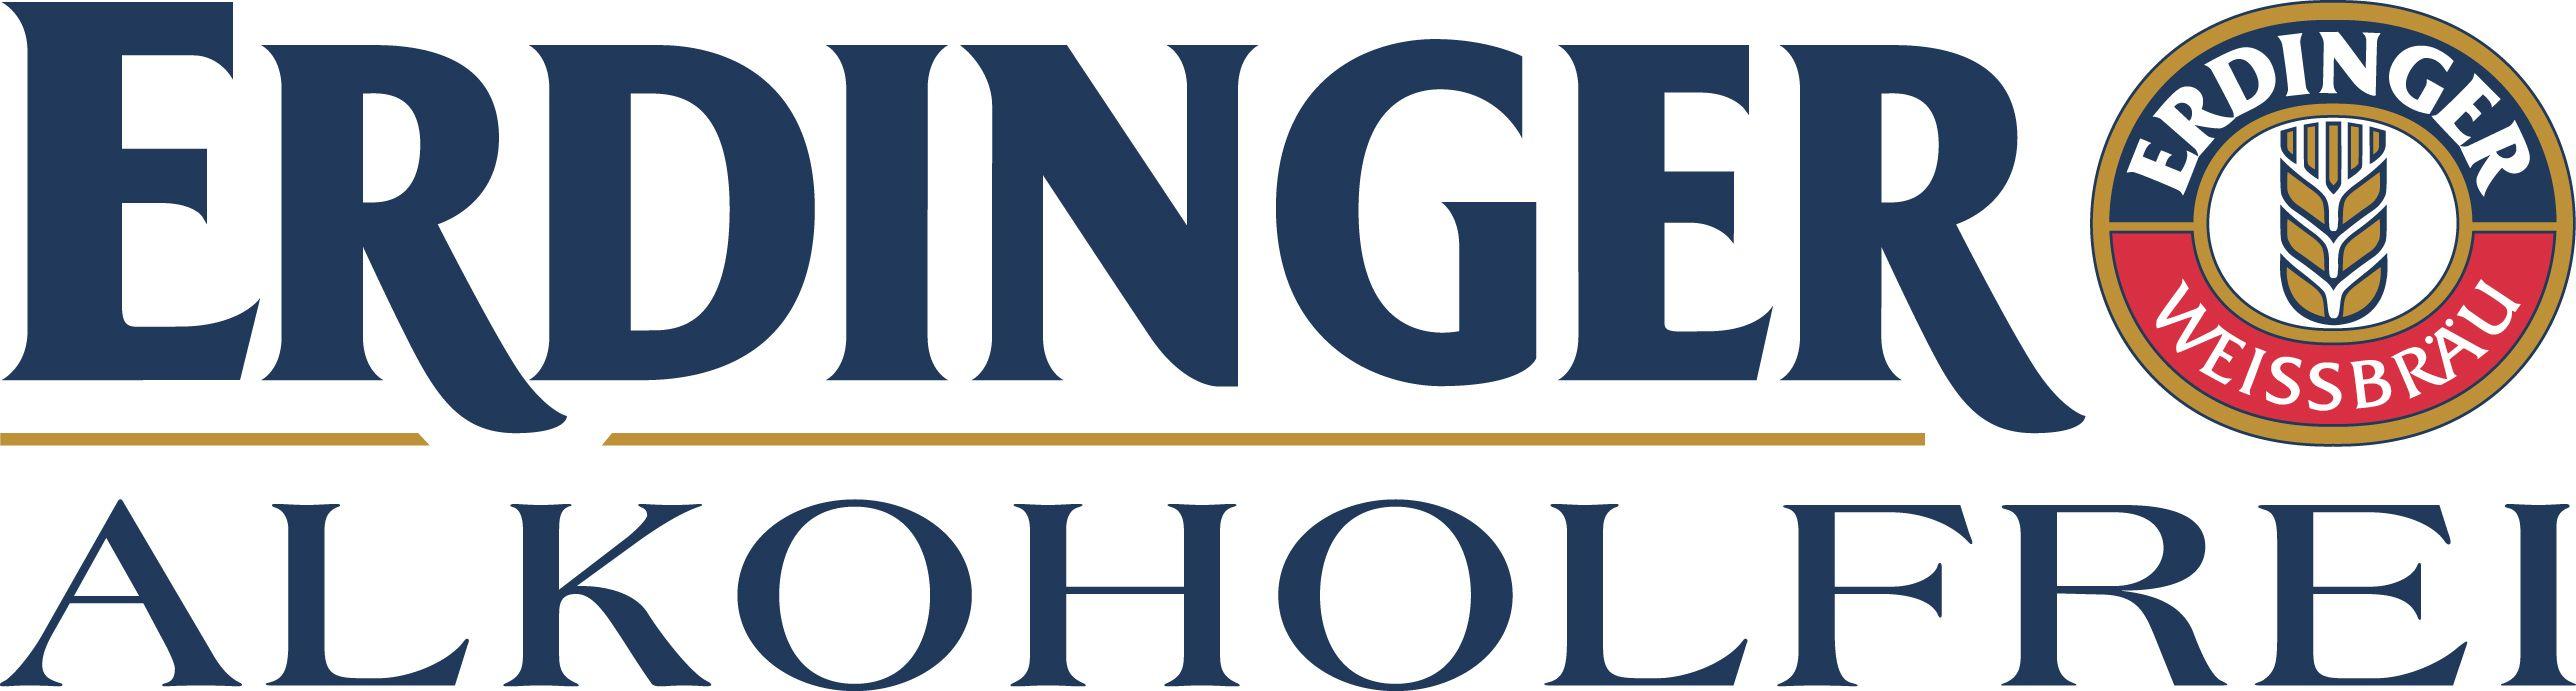 Erdinger Logo - Logo Erdinger | #thomasbohne